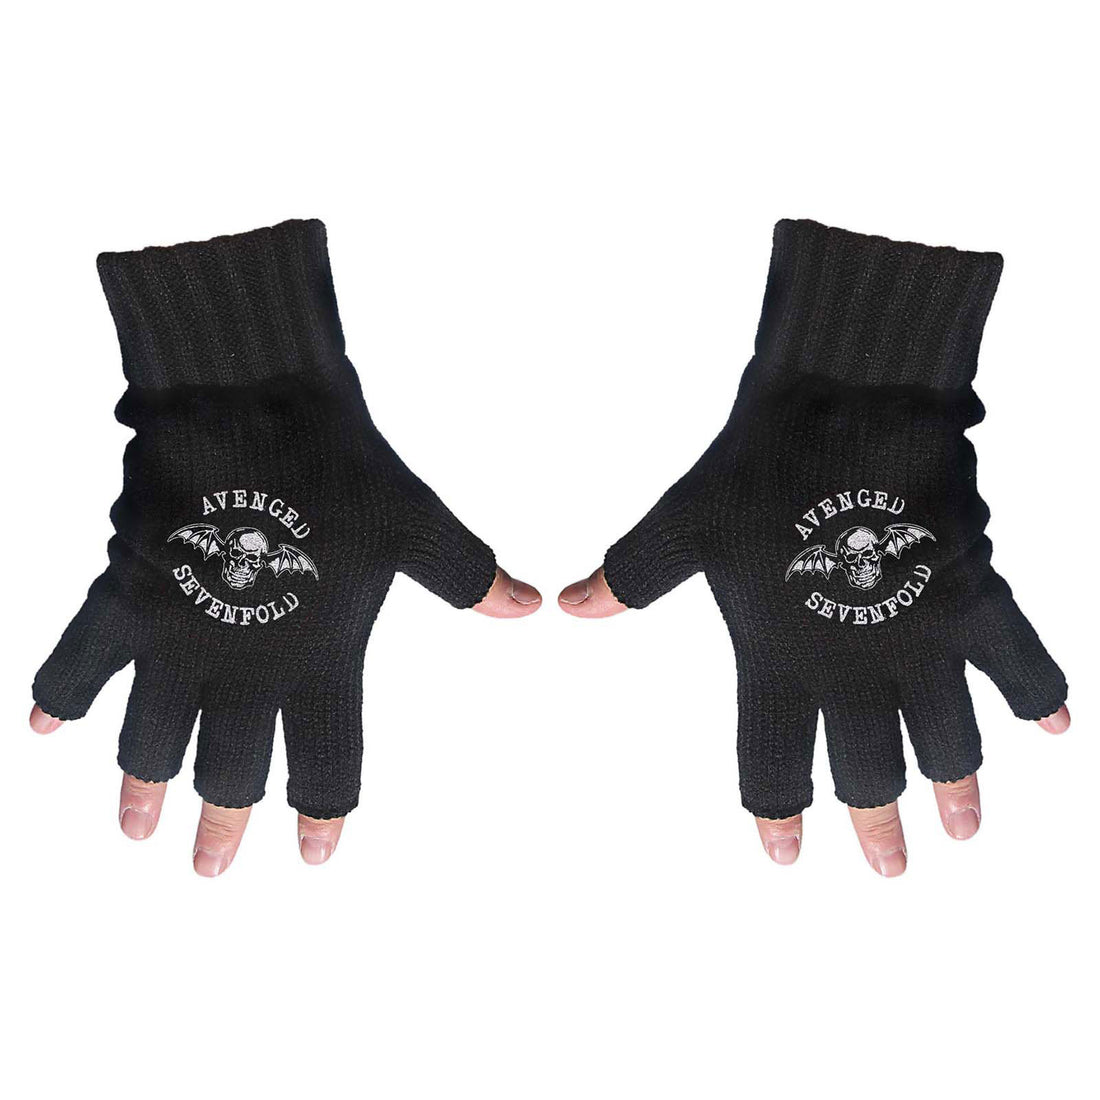 Avenged Sevenfold Fingerless Gloves: Death Bat